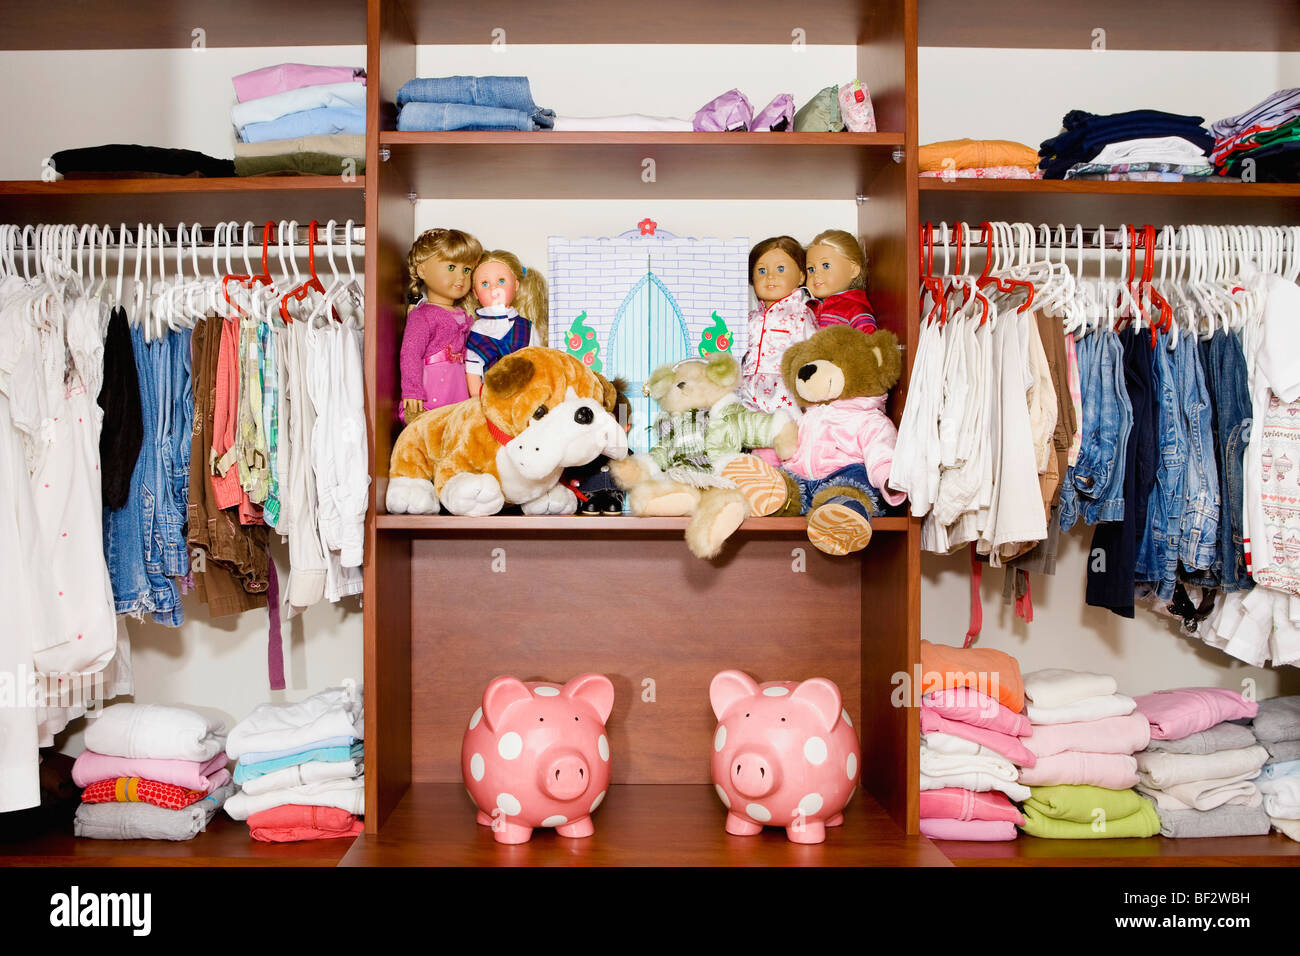 La ropa y los juguetes en un armario Foto de stock